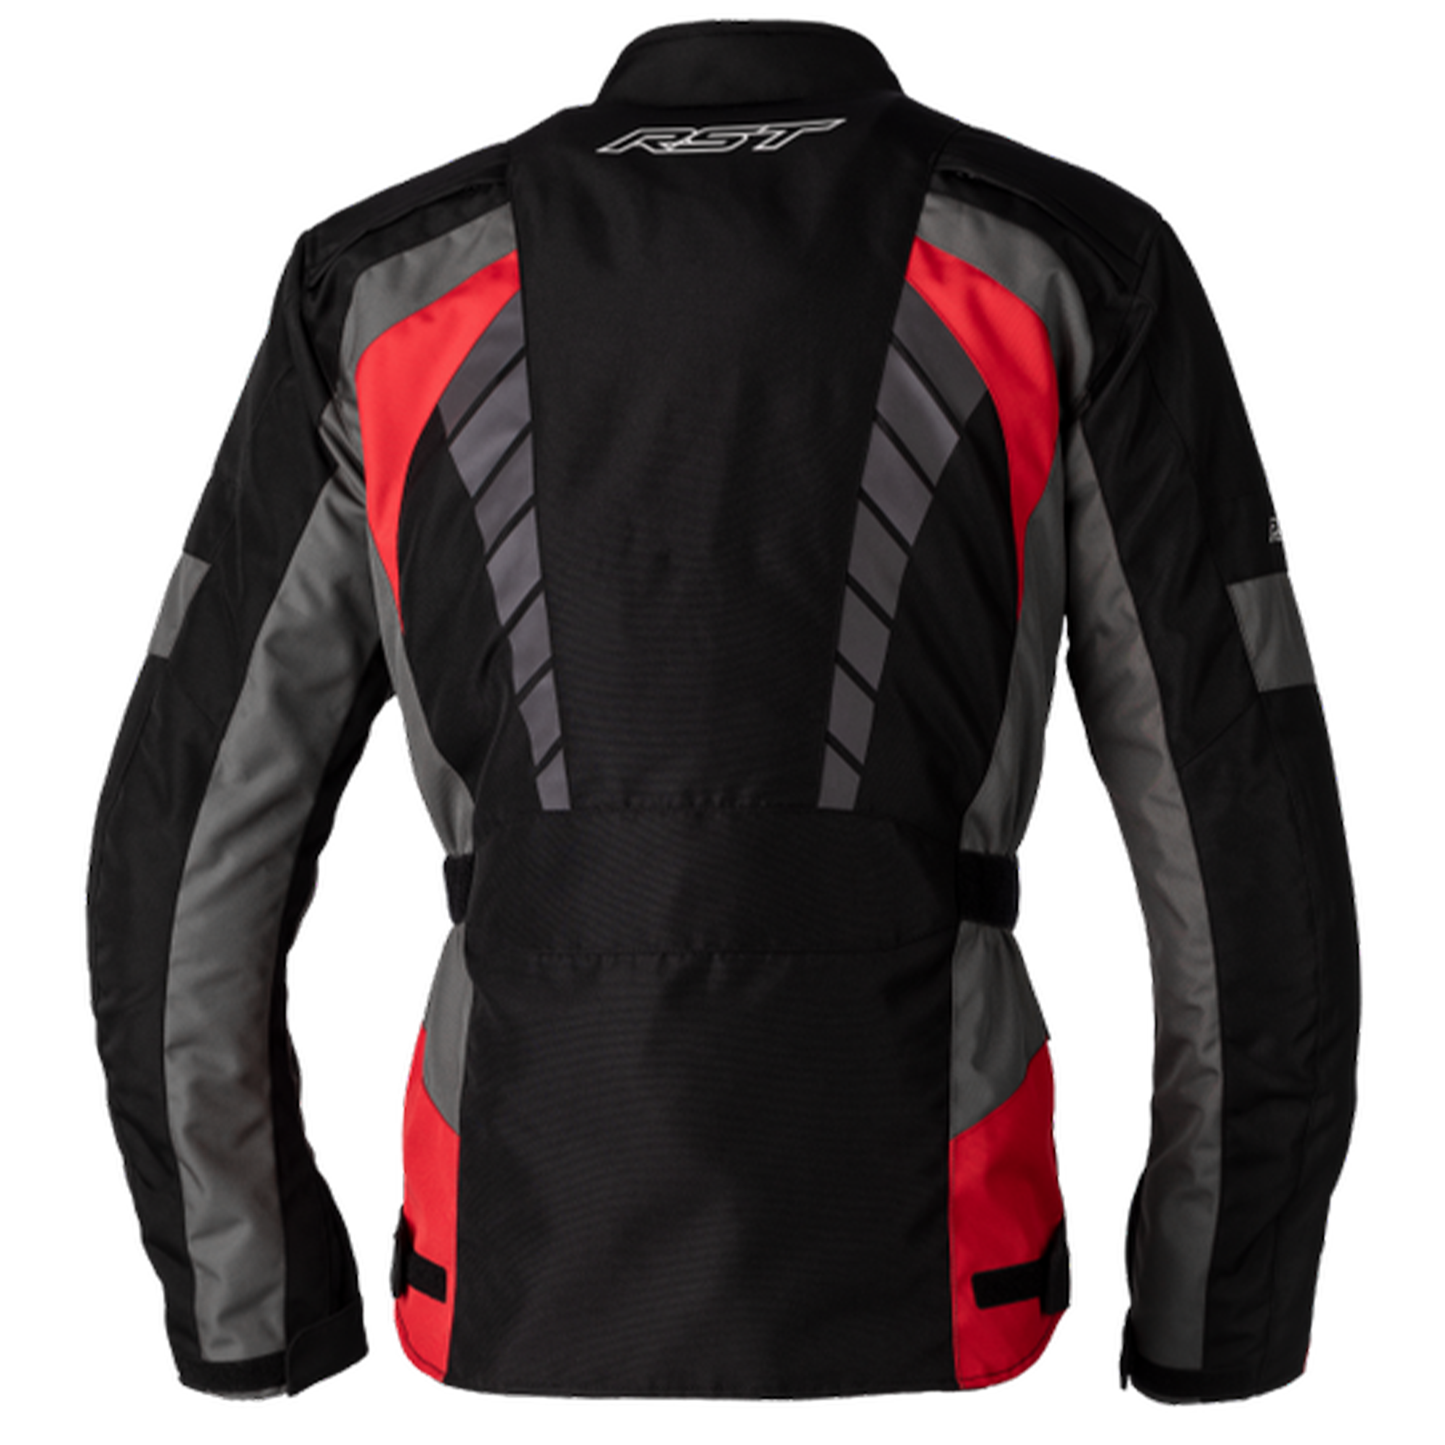 RST Alpha 5 Textile Jacket - Black/Red (3028)